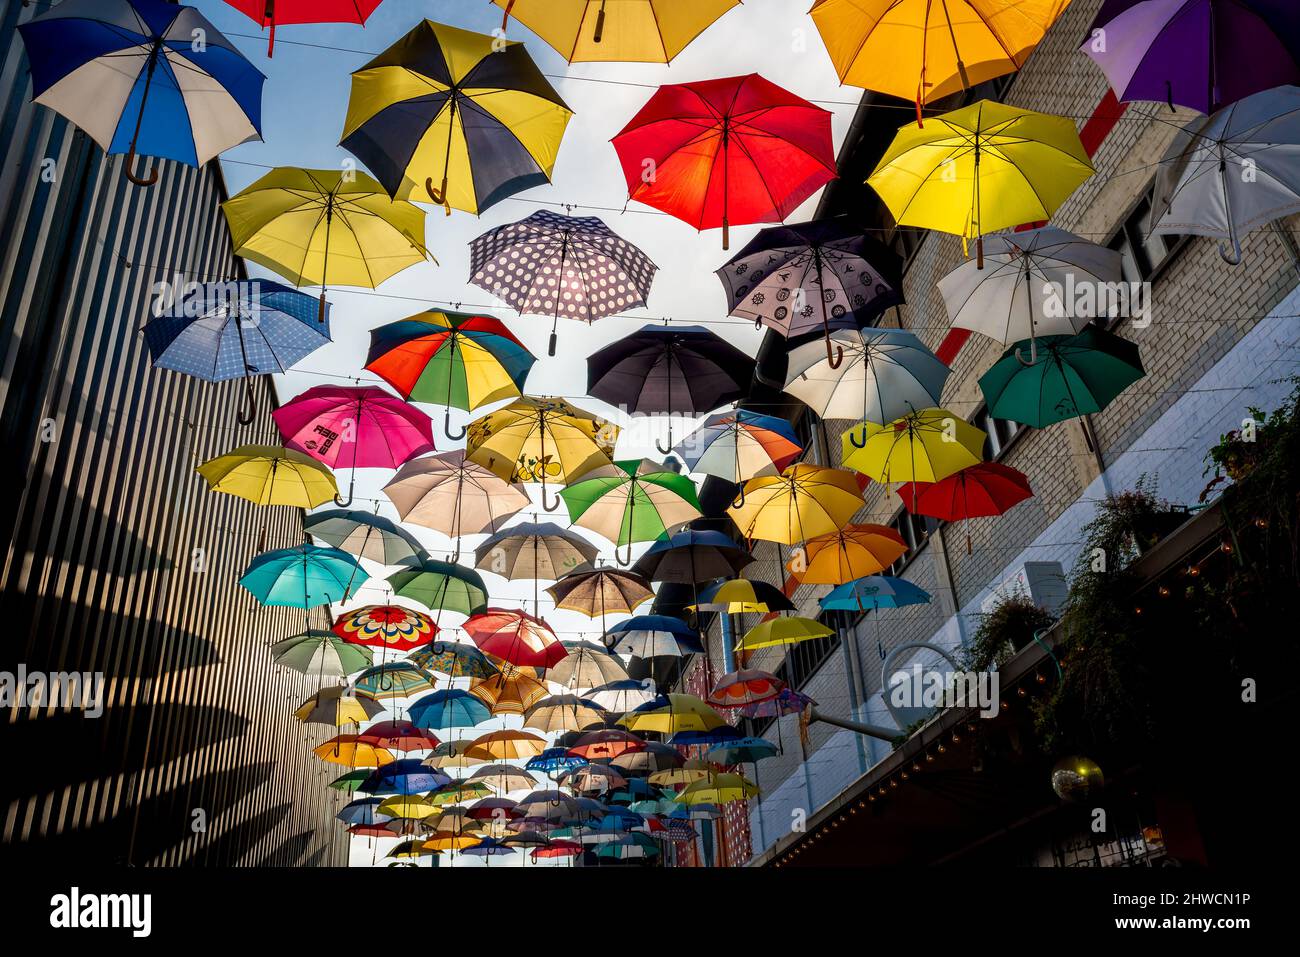 Colorful Umbrellas at Gerold Cuchi Restaurant - Zurich, Switzerland Stock Photo